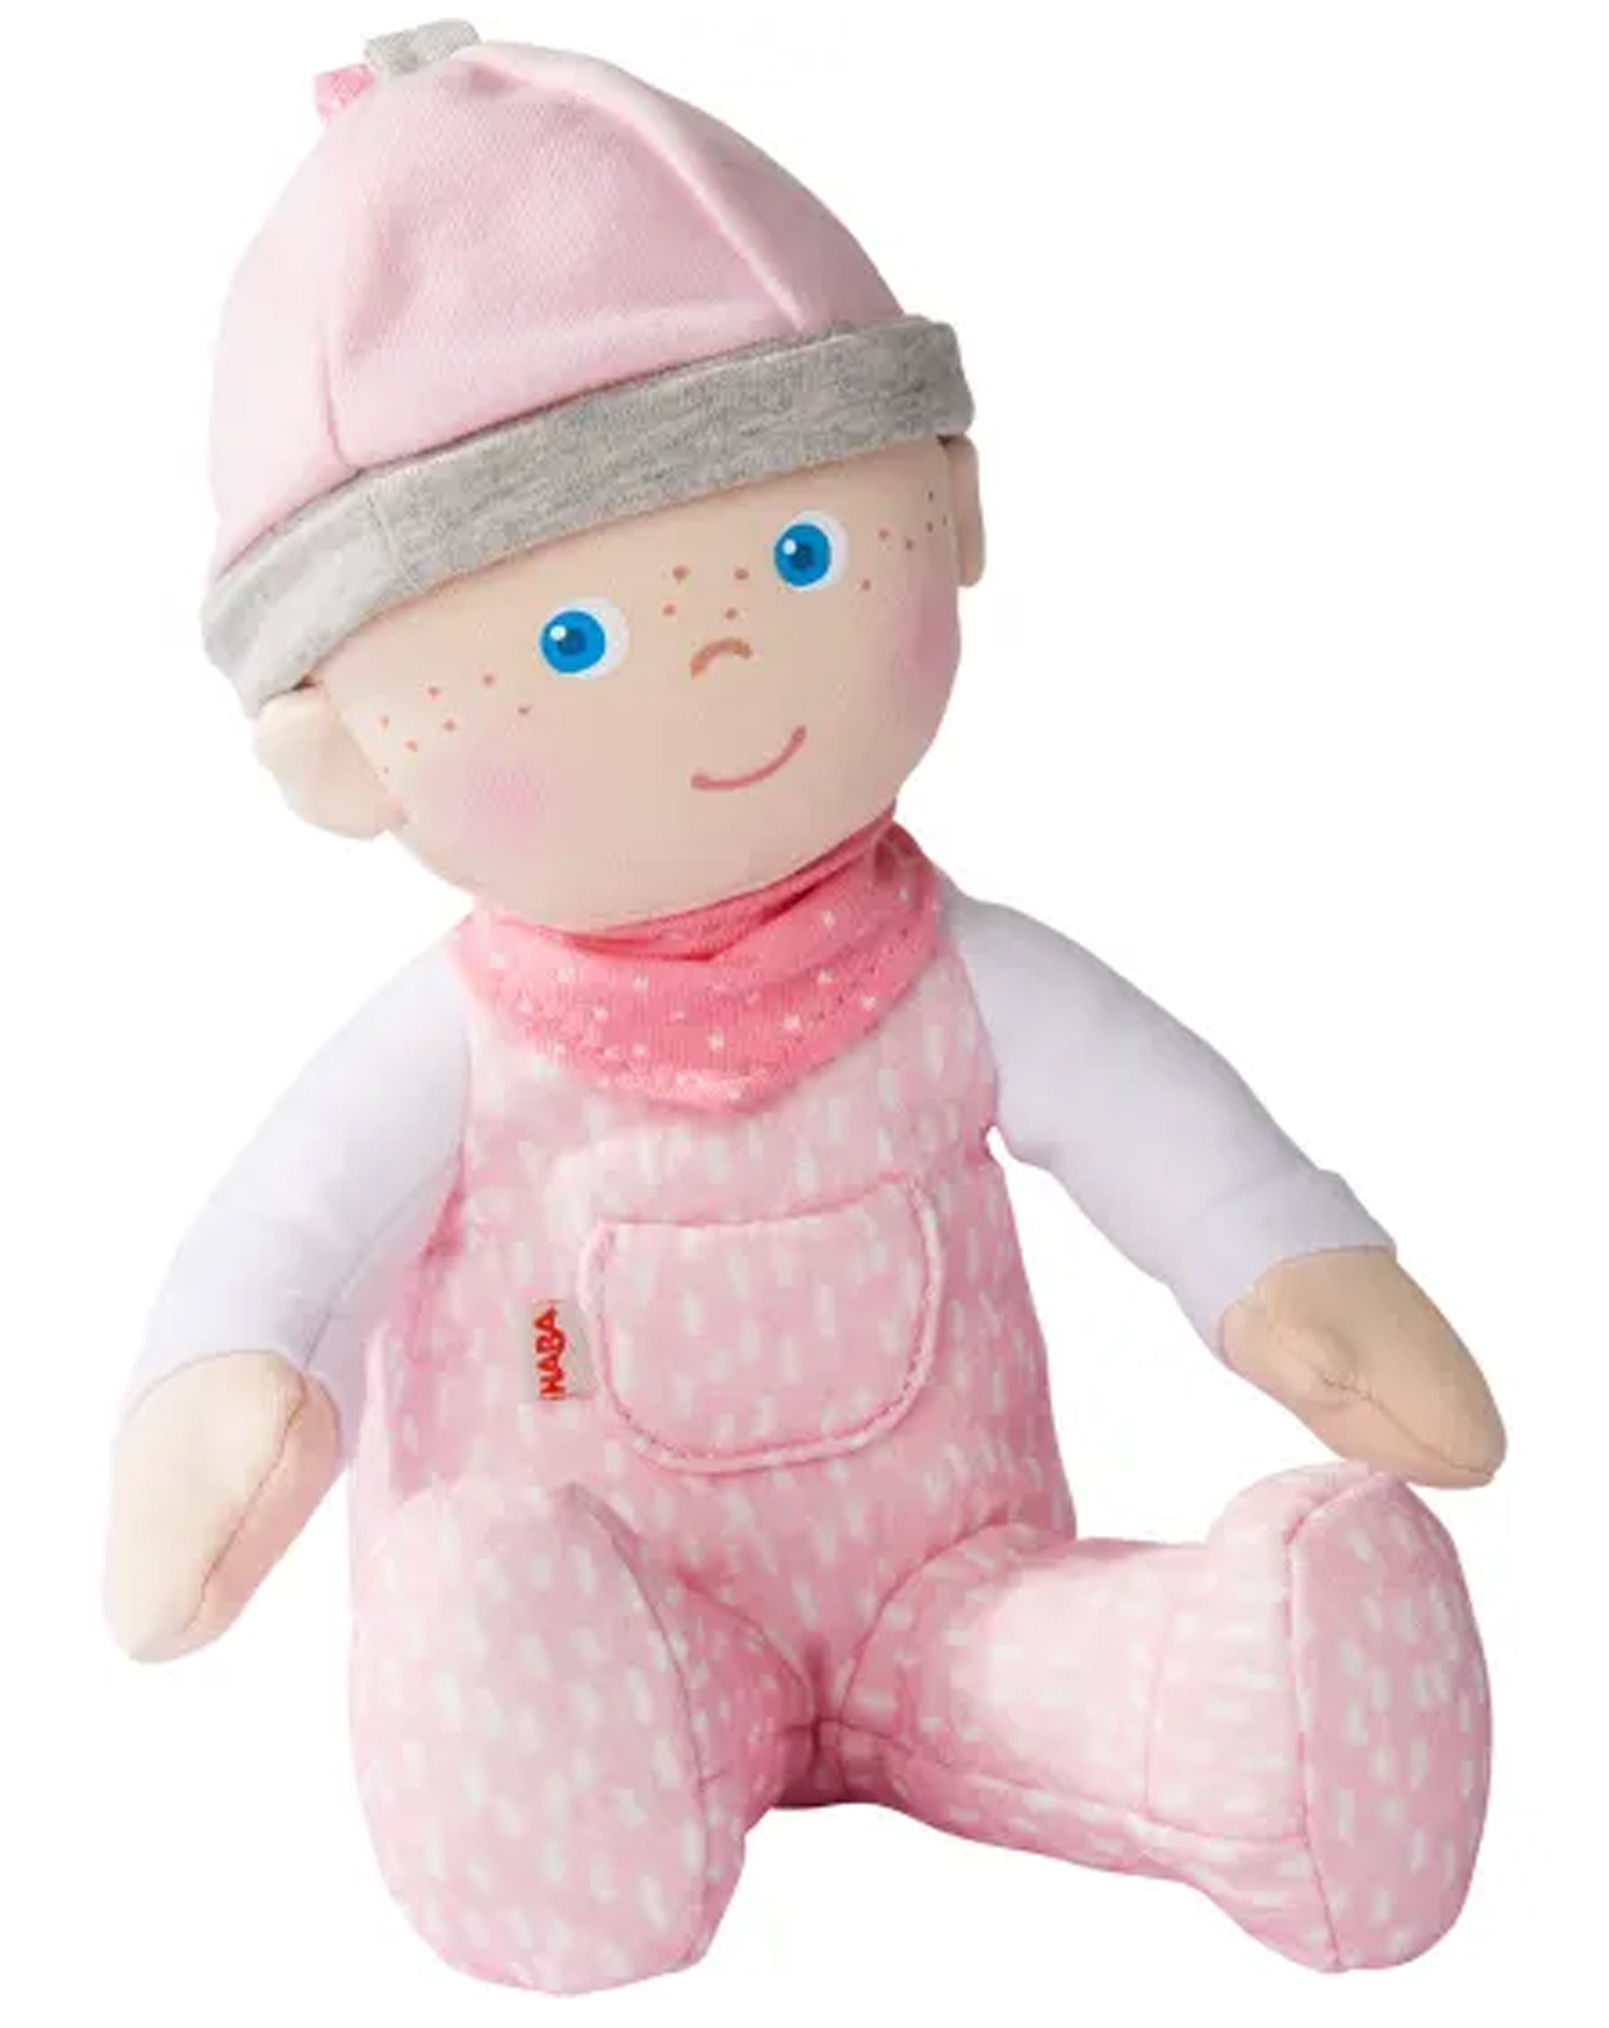 Stoff-Puppe MARLE 20 cm in rosa jetzt bei Weltbild.de bestellen